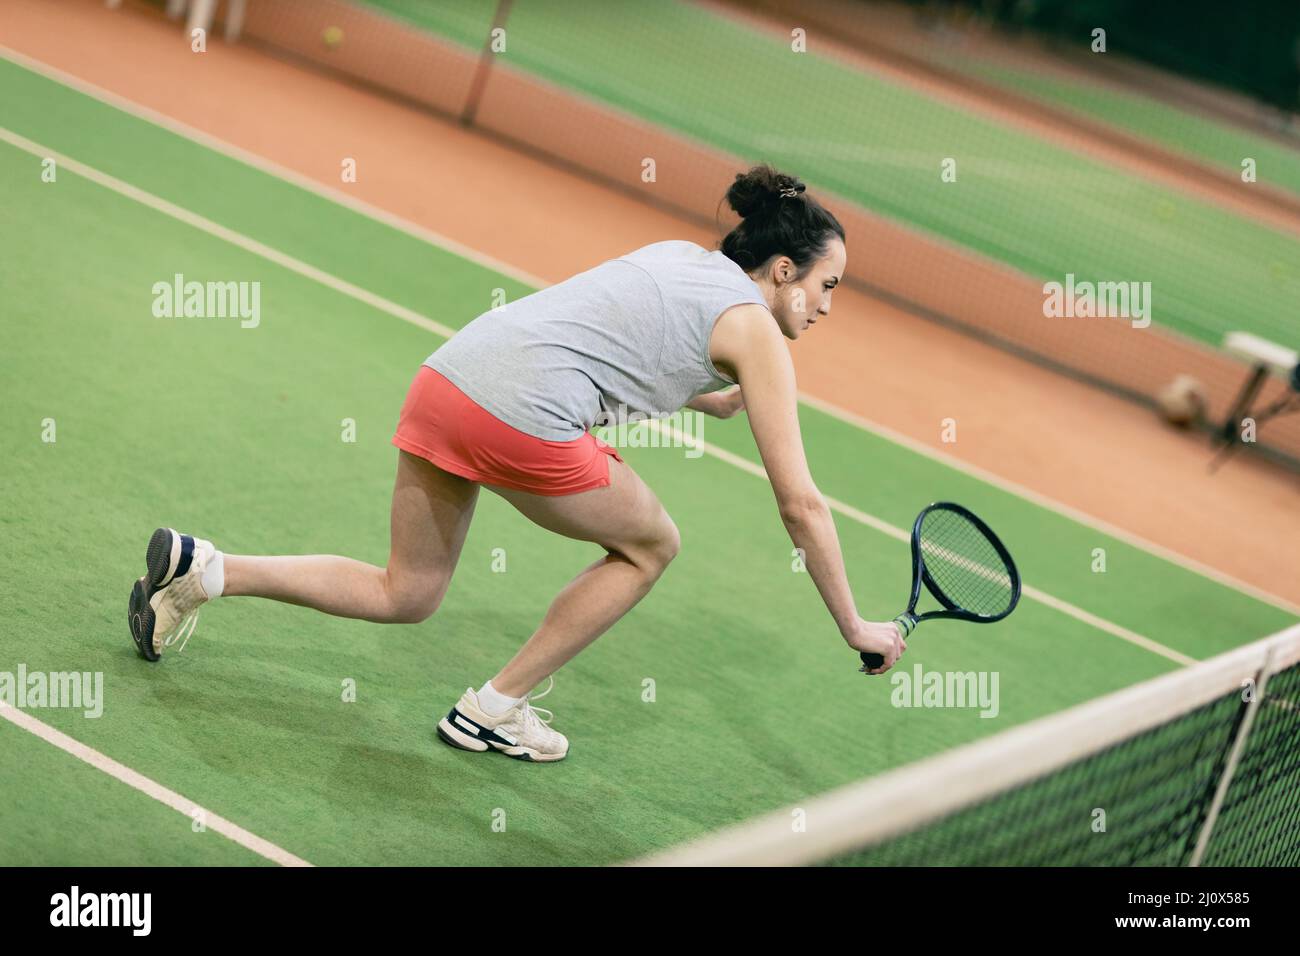 Tenista mujer jugando entrenamiento con raqueta y pelota en la cancha Foto de stock